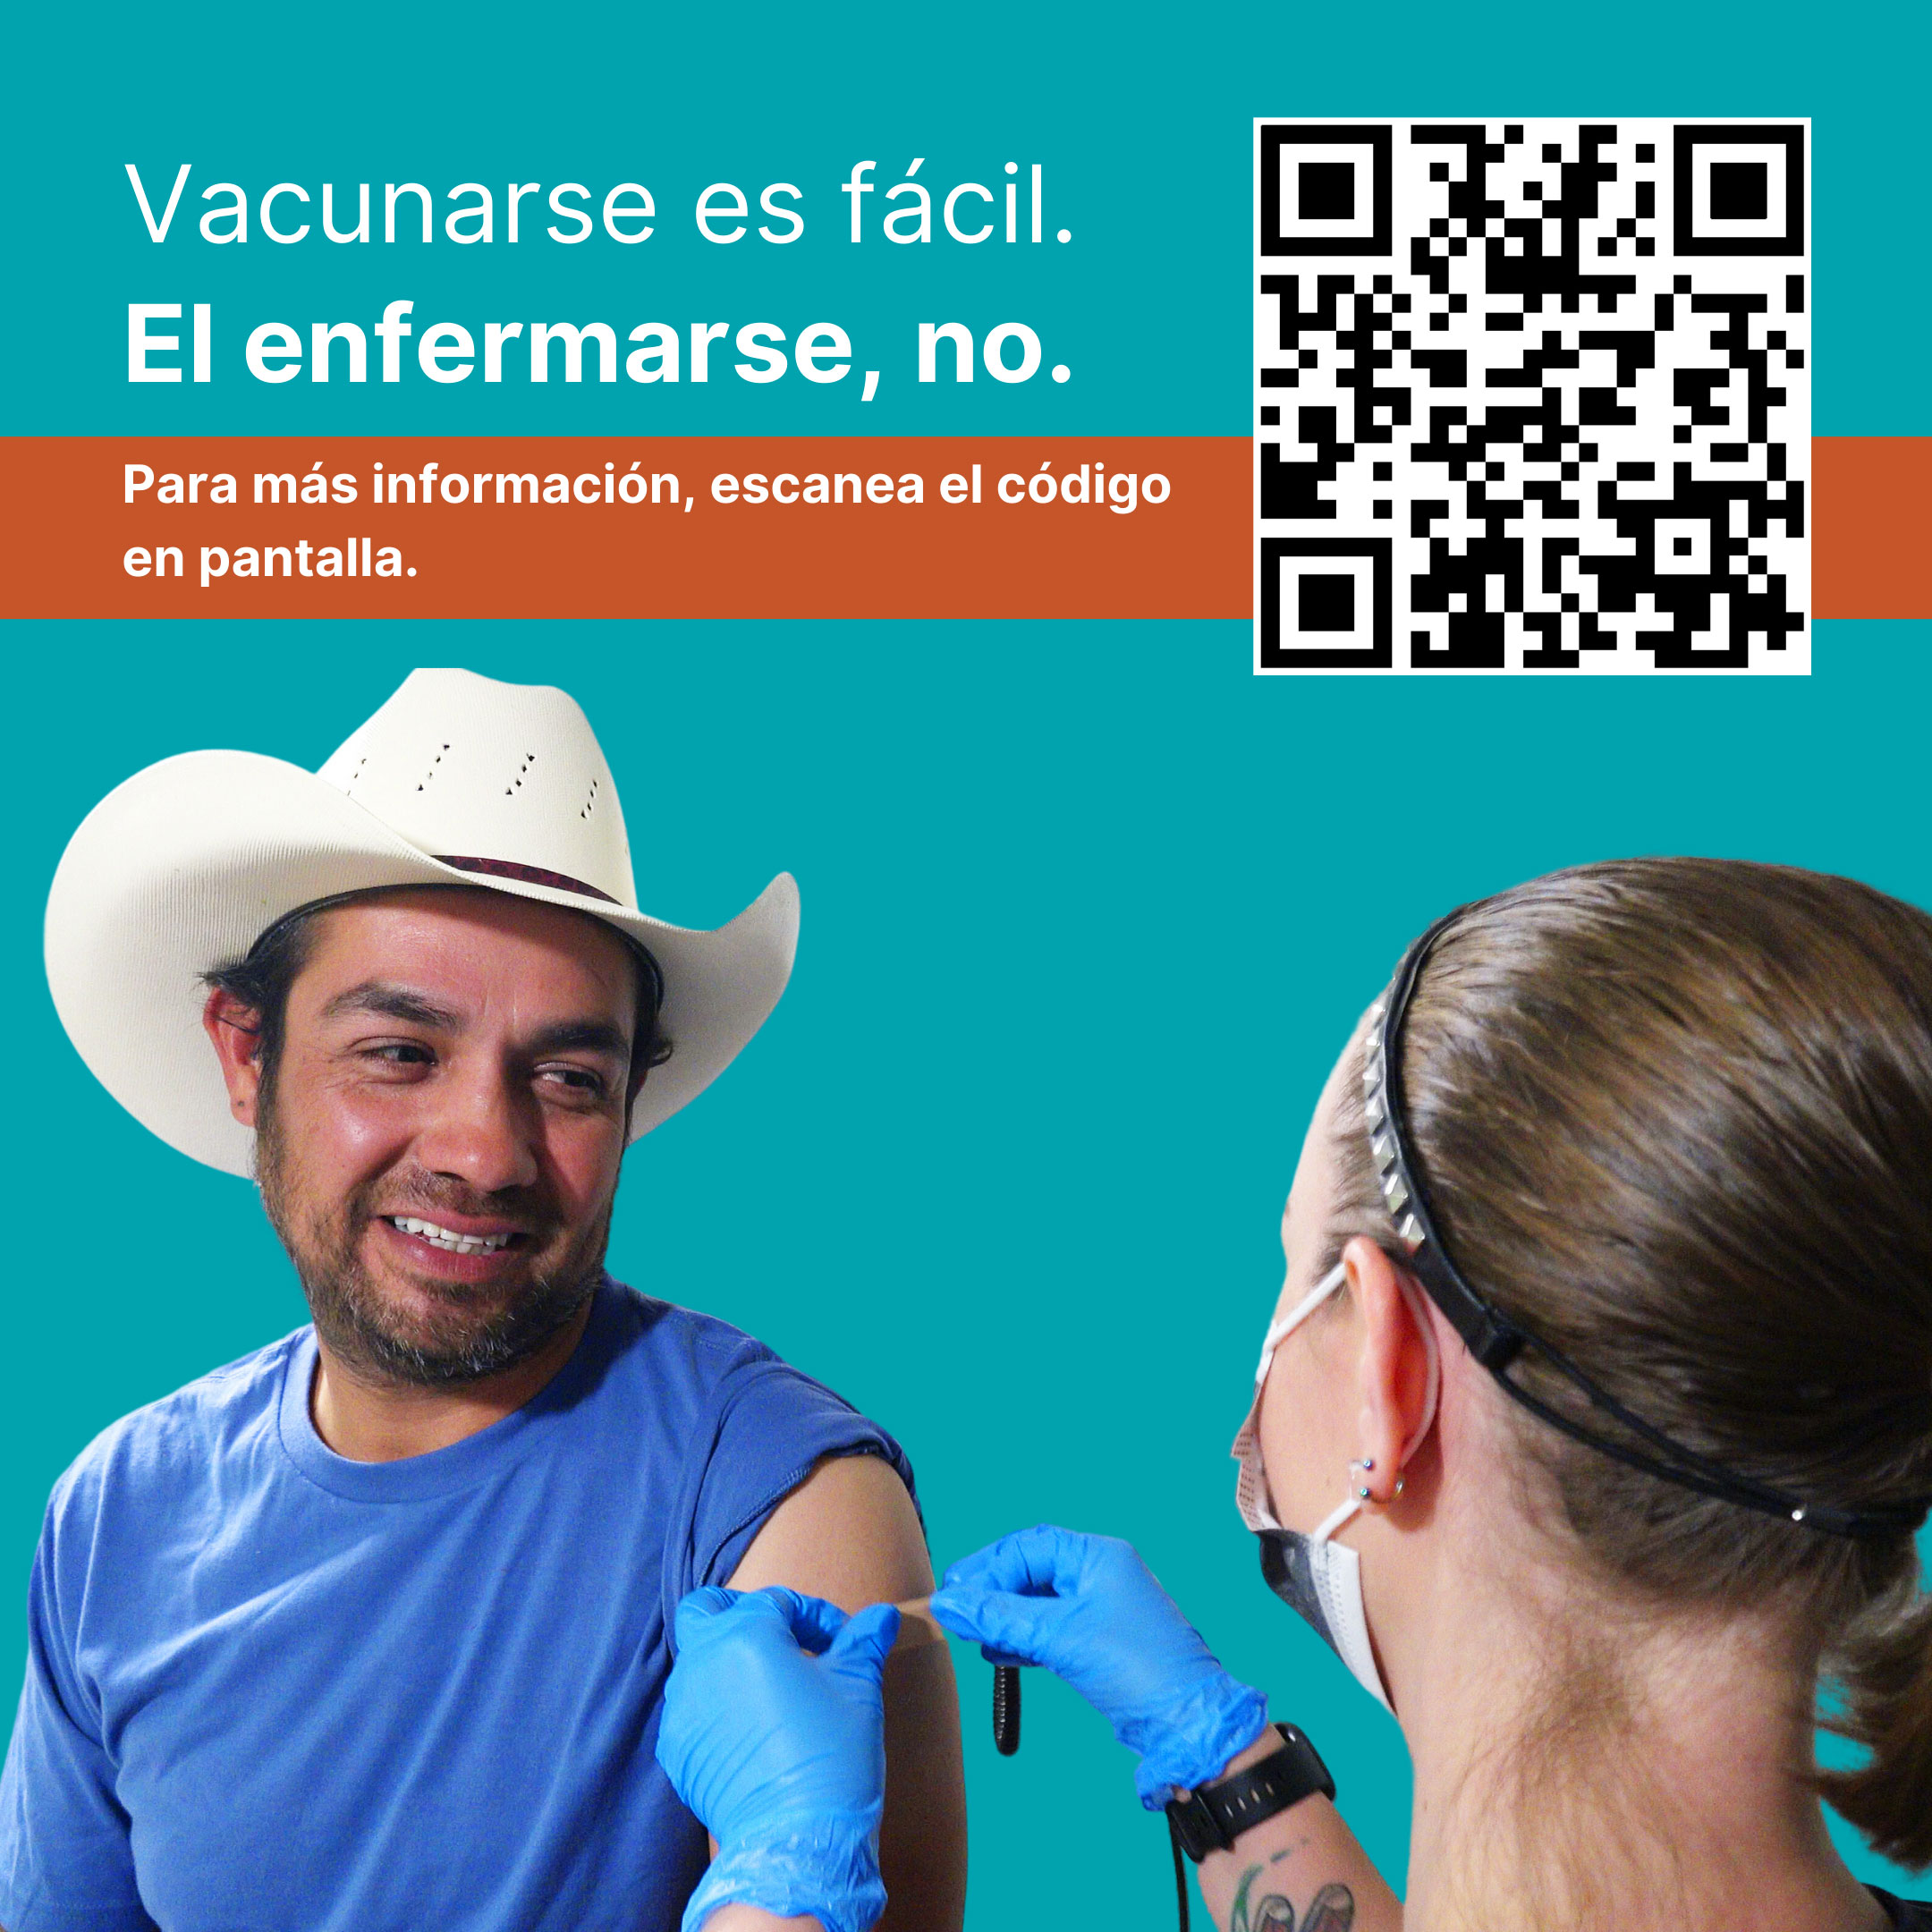 Granjero recibiendo una tira adhesiva (curita) en su brazo después de recibir una vacuna. Texto dice: Vacunarse es fácil. El enfermarse, no.